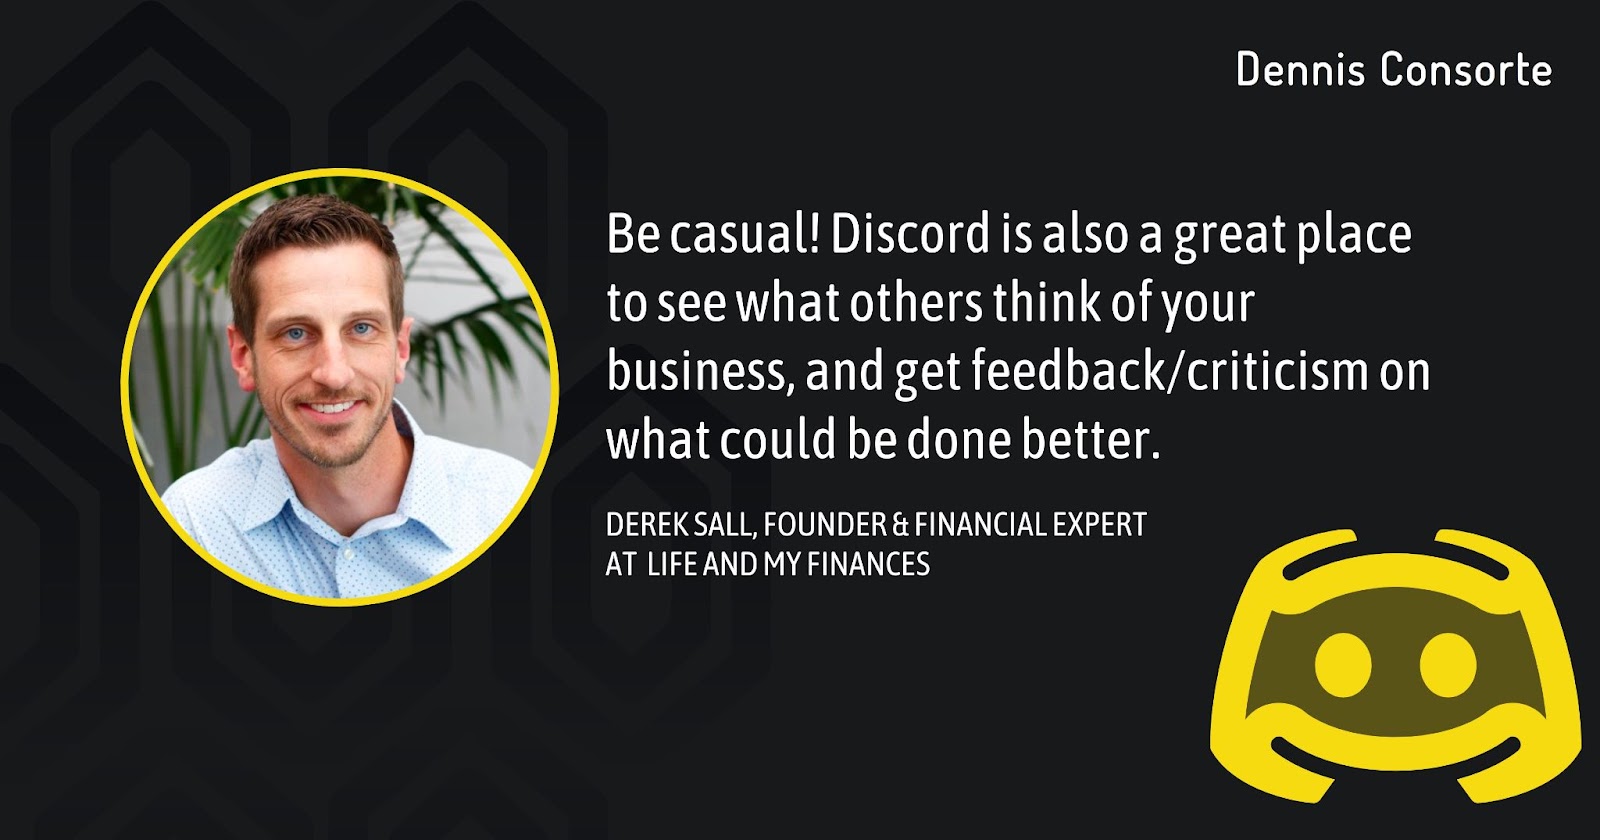 Derek Sall, Founder & Financial Expert, Life and My Finances